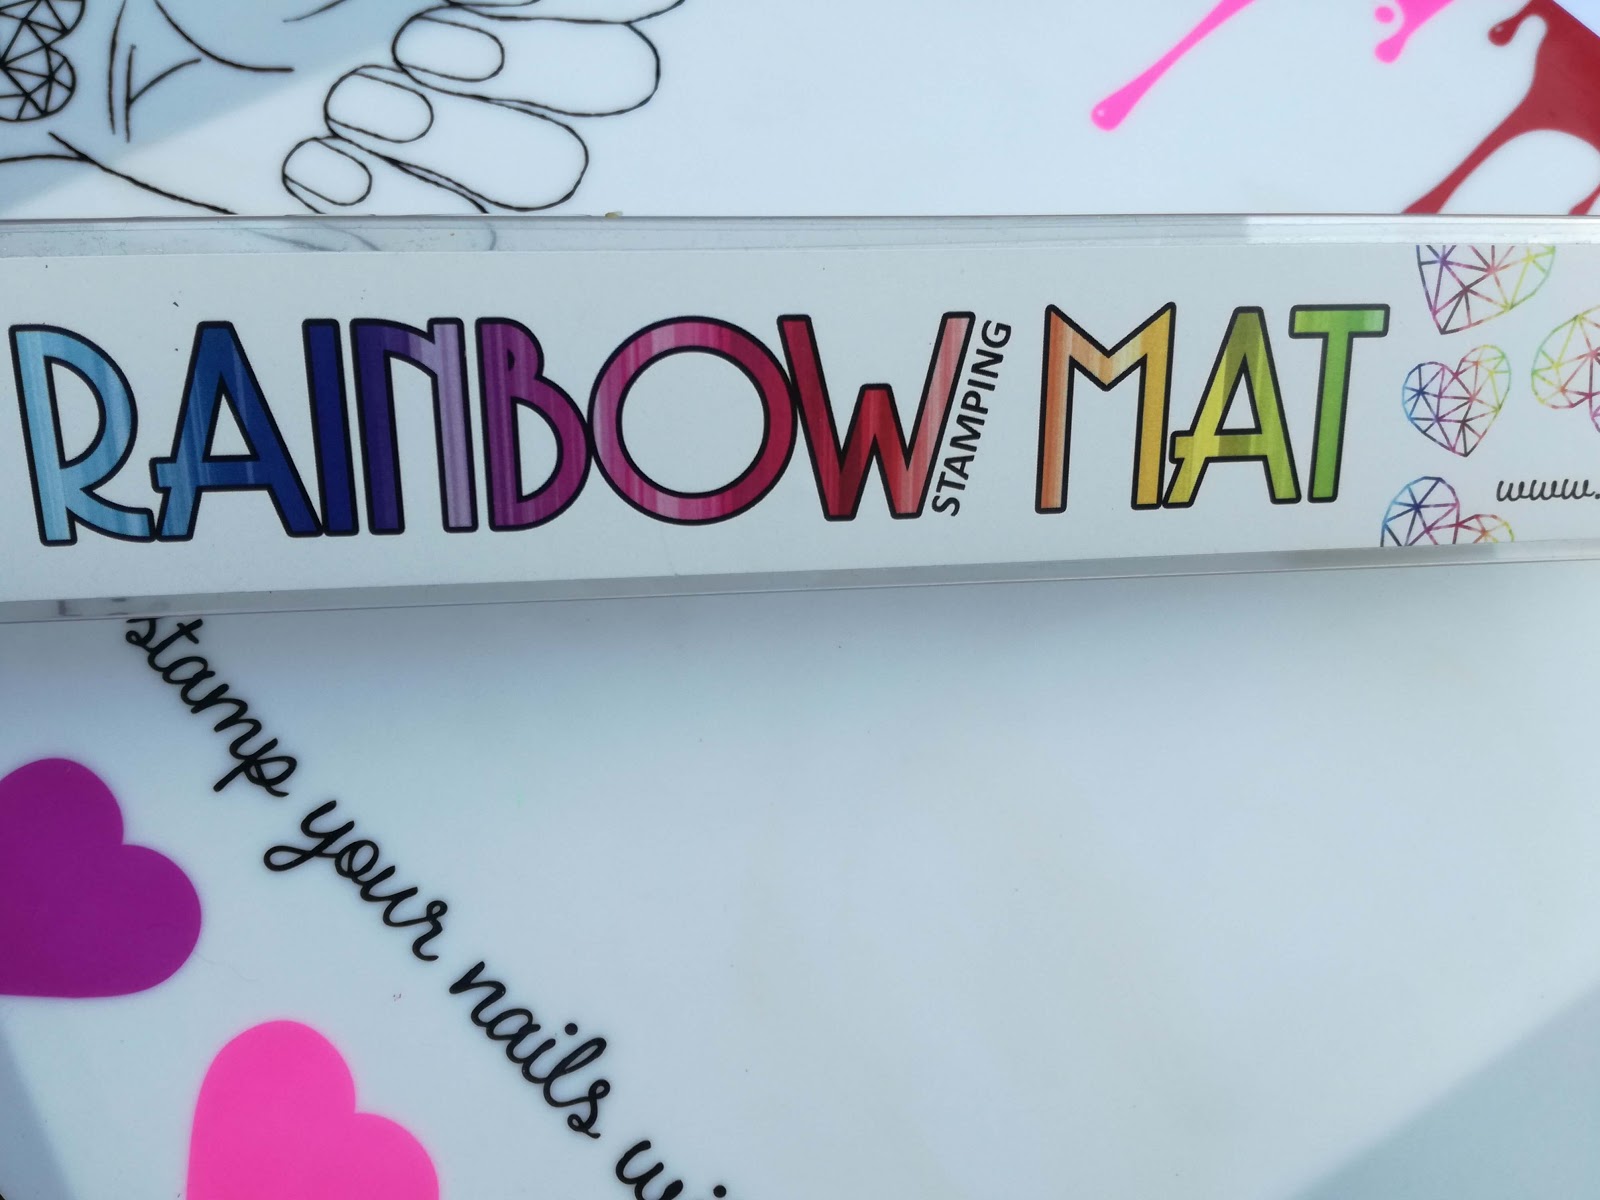 rainbow mat